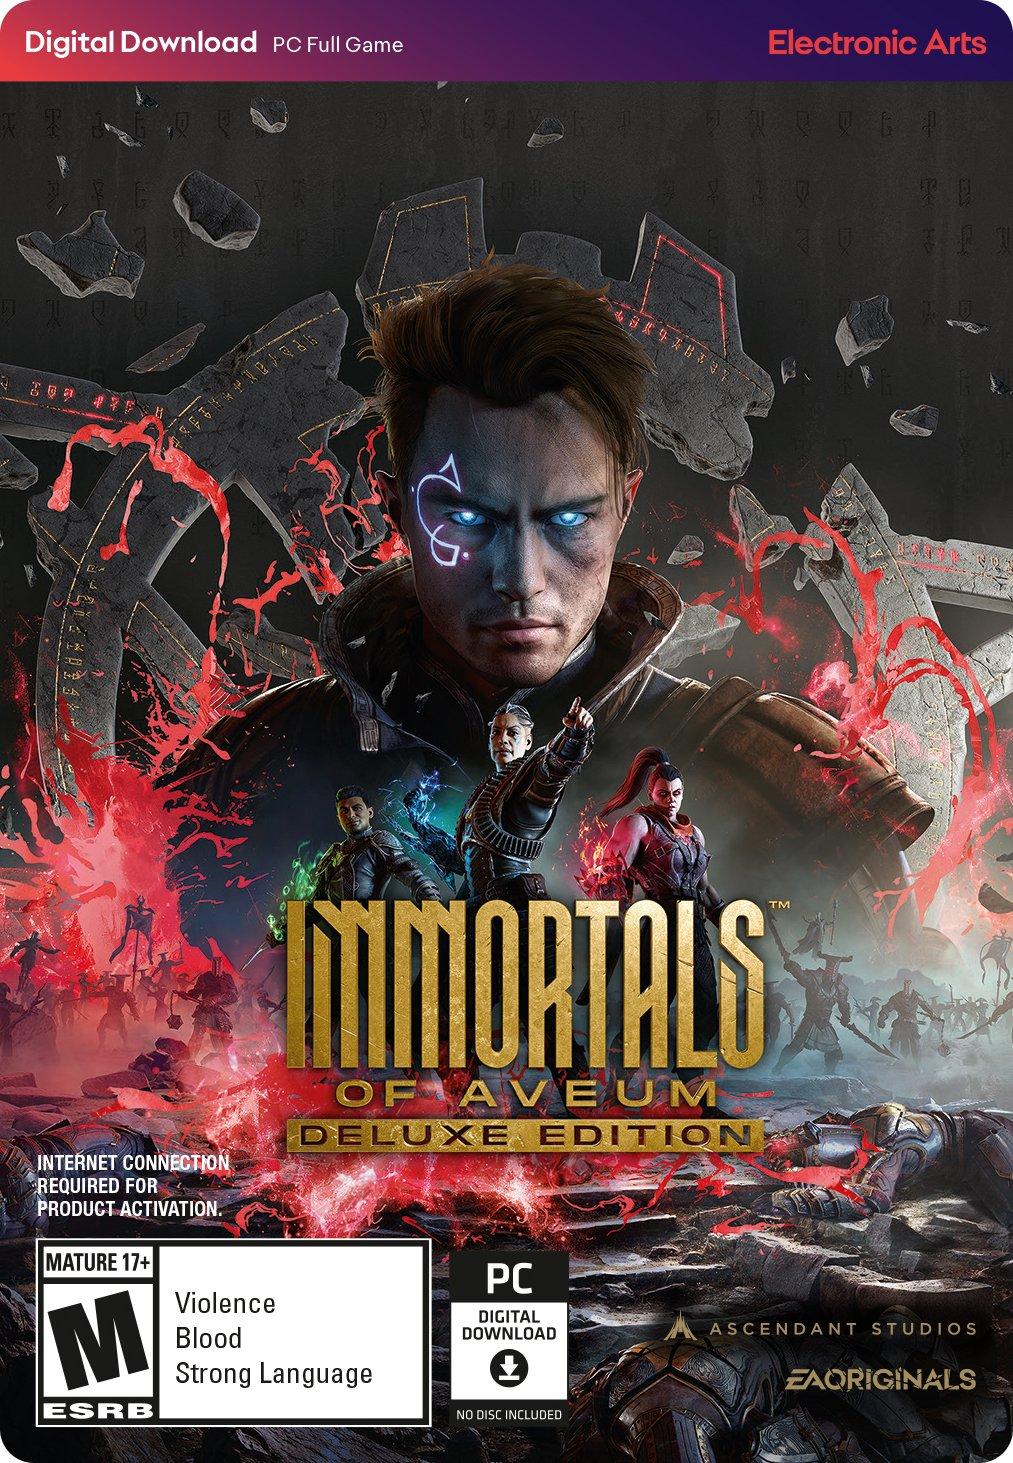 Immortals of app - | Aveum GameStop Deluxe Edition EA PC